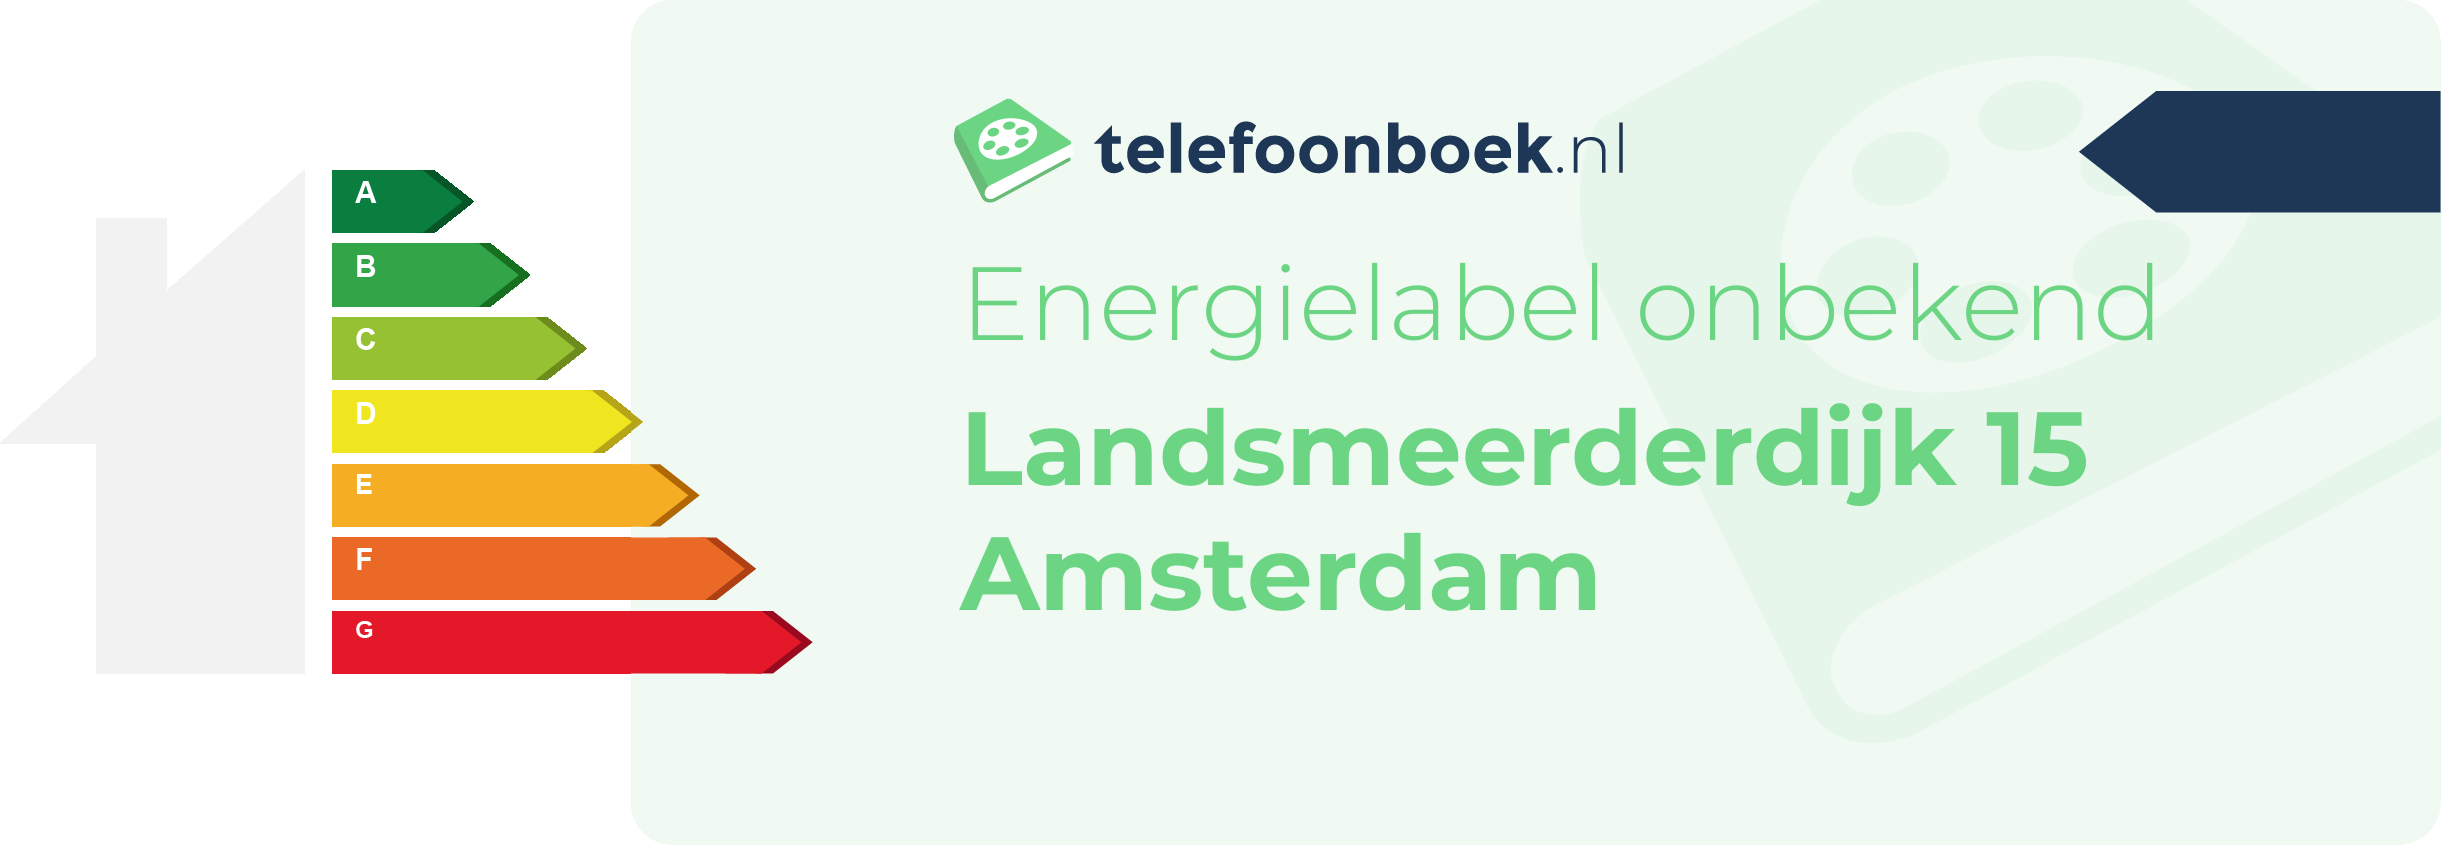 Energielabel Landsmeerderdijk 15 Amsterdam